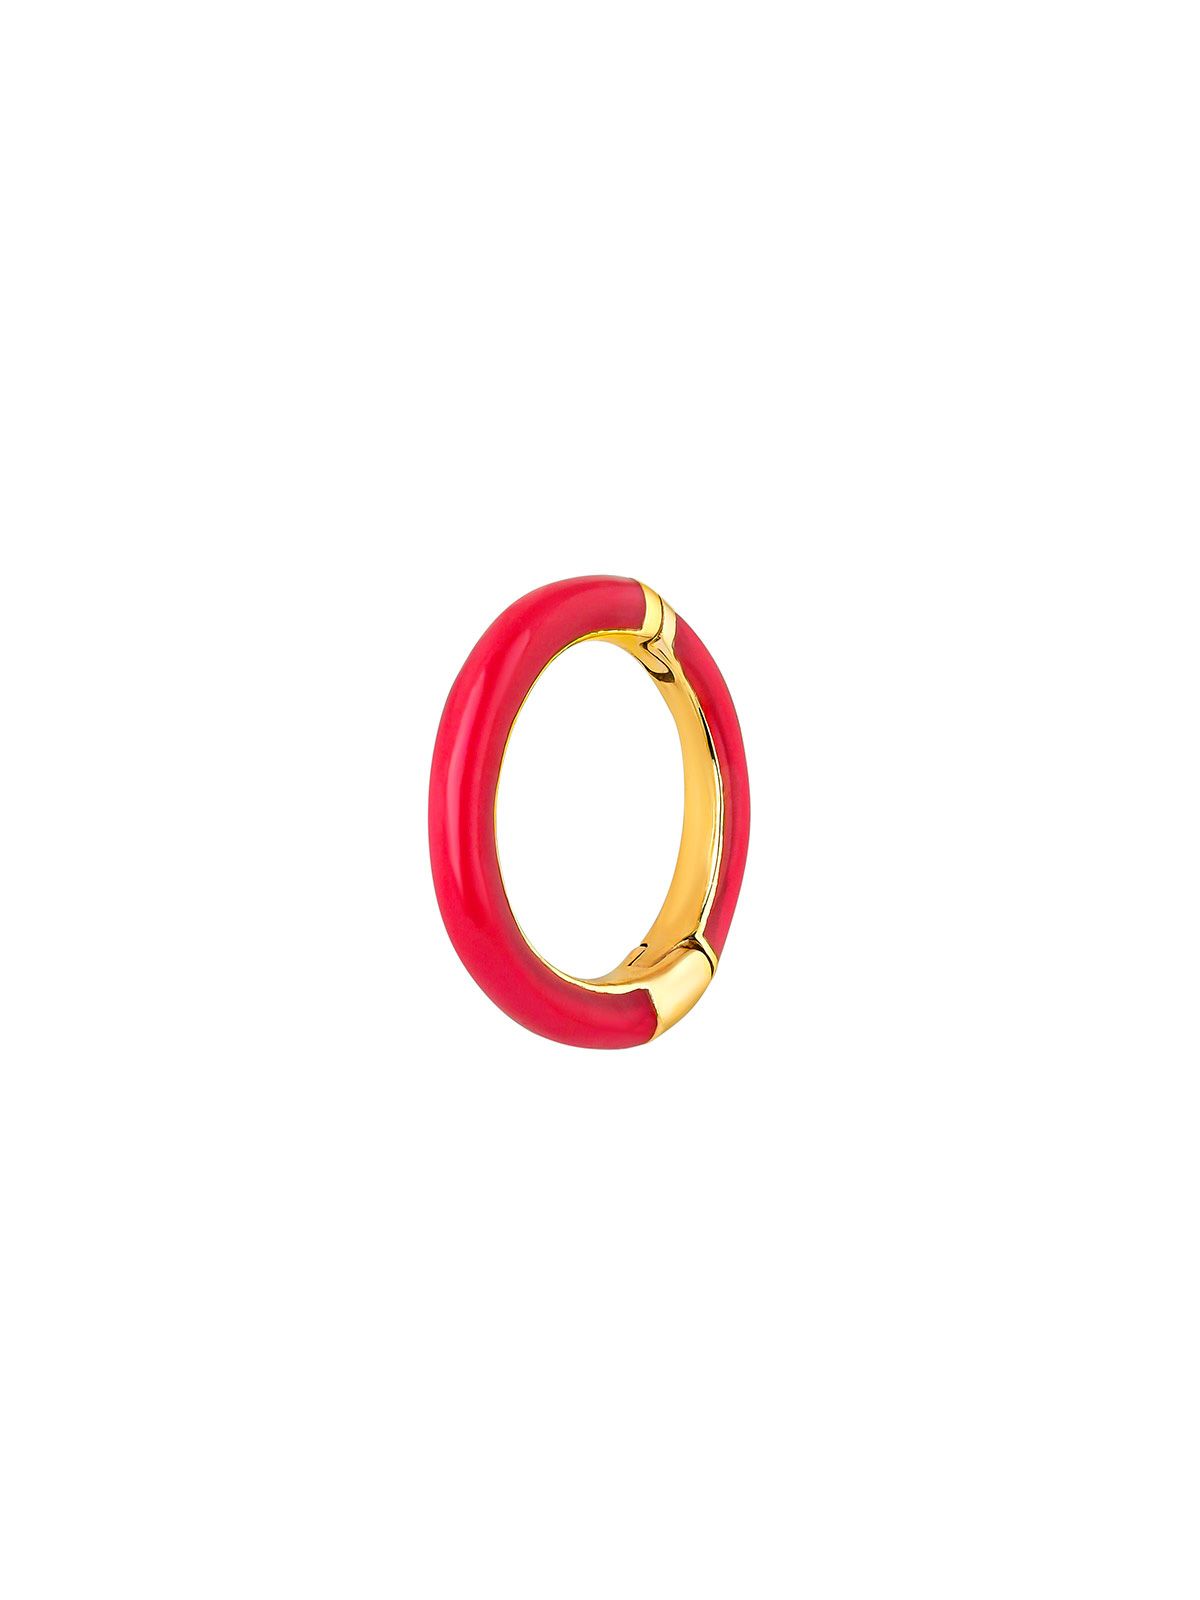 Boucle d'oreille individuelle en or jaune 9K de petit anneau avec émail rose.